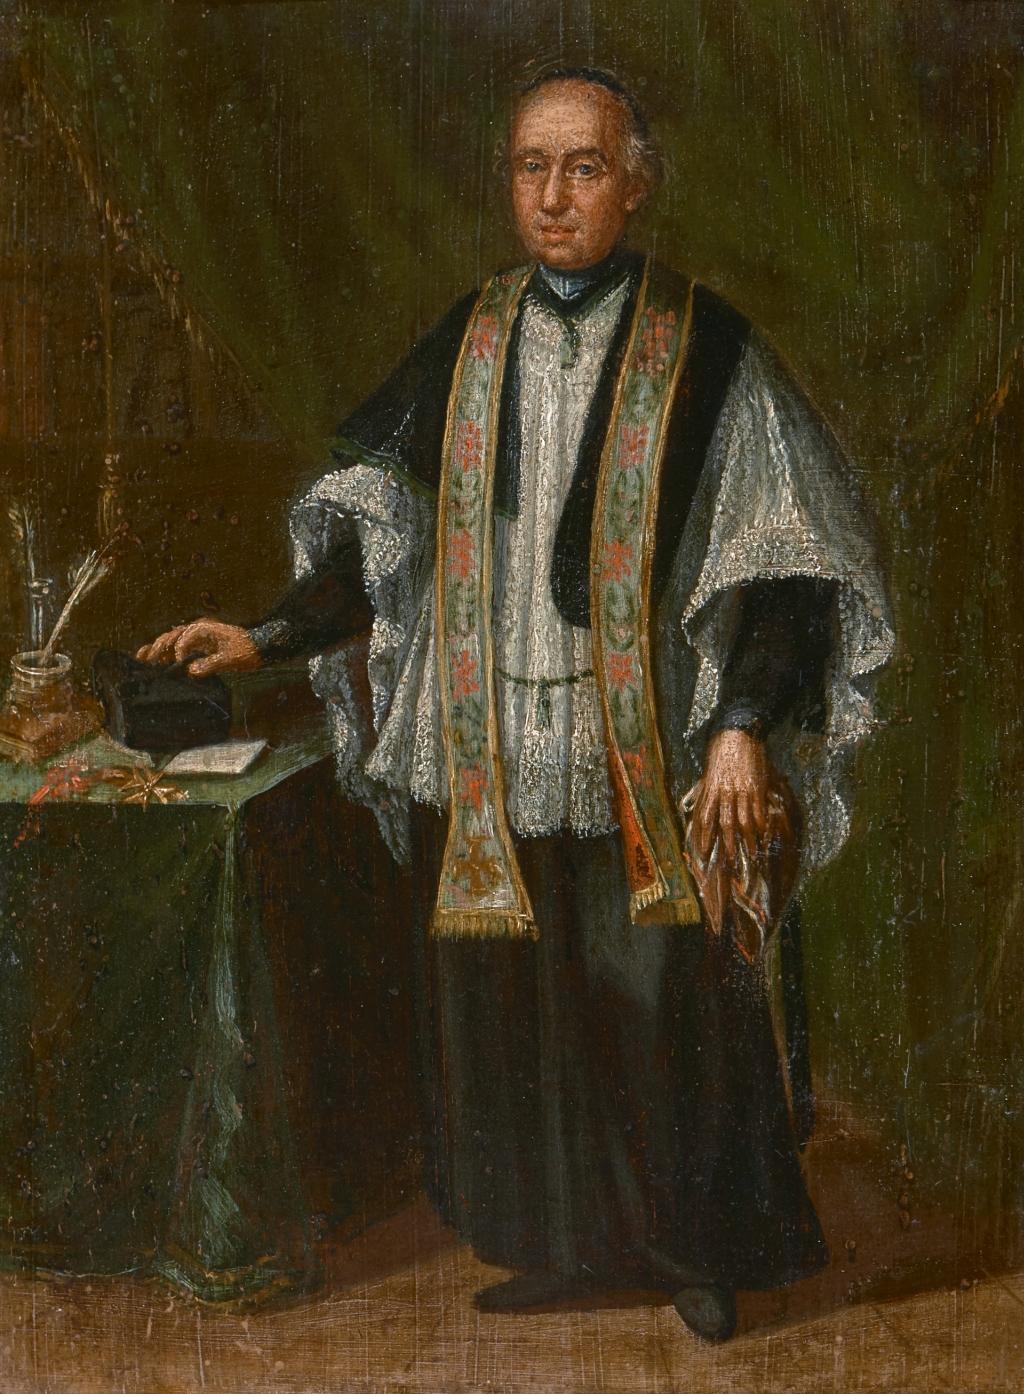 18th century bishop